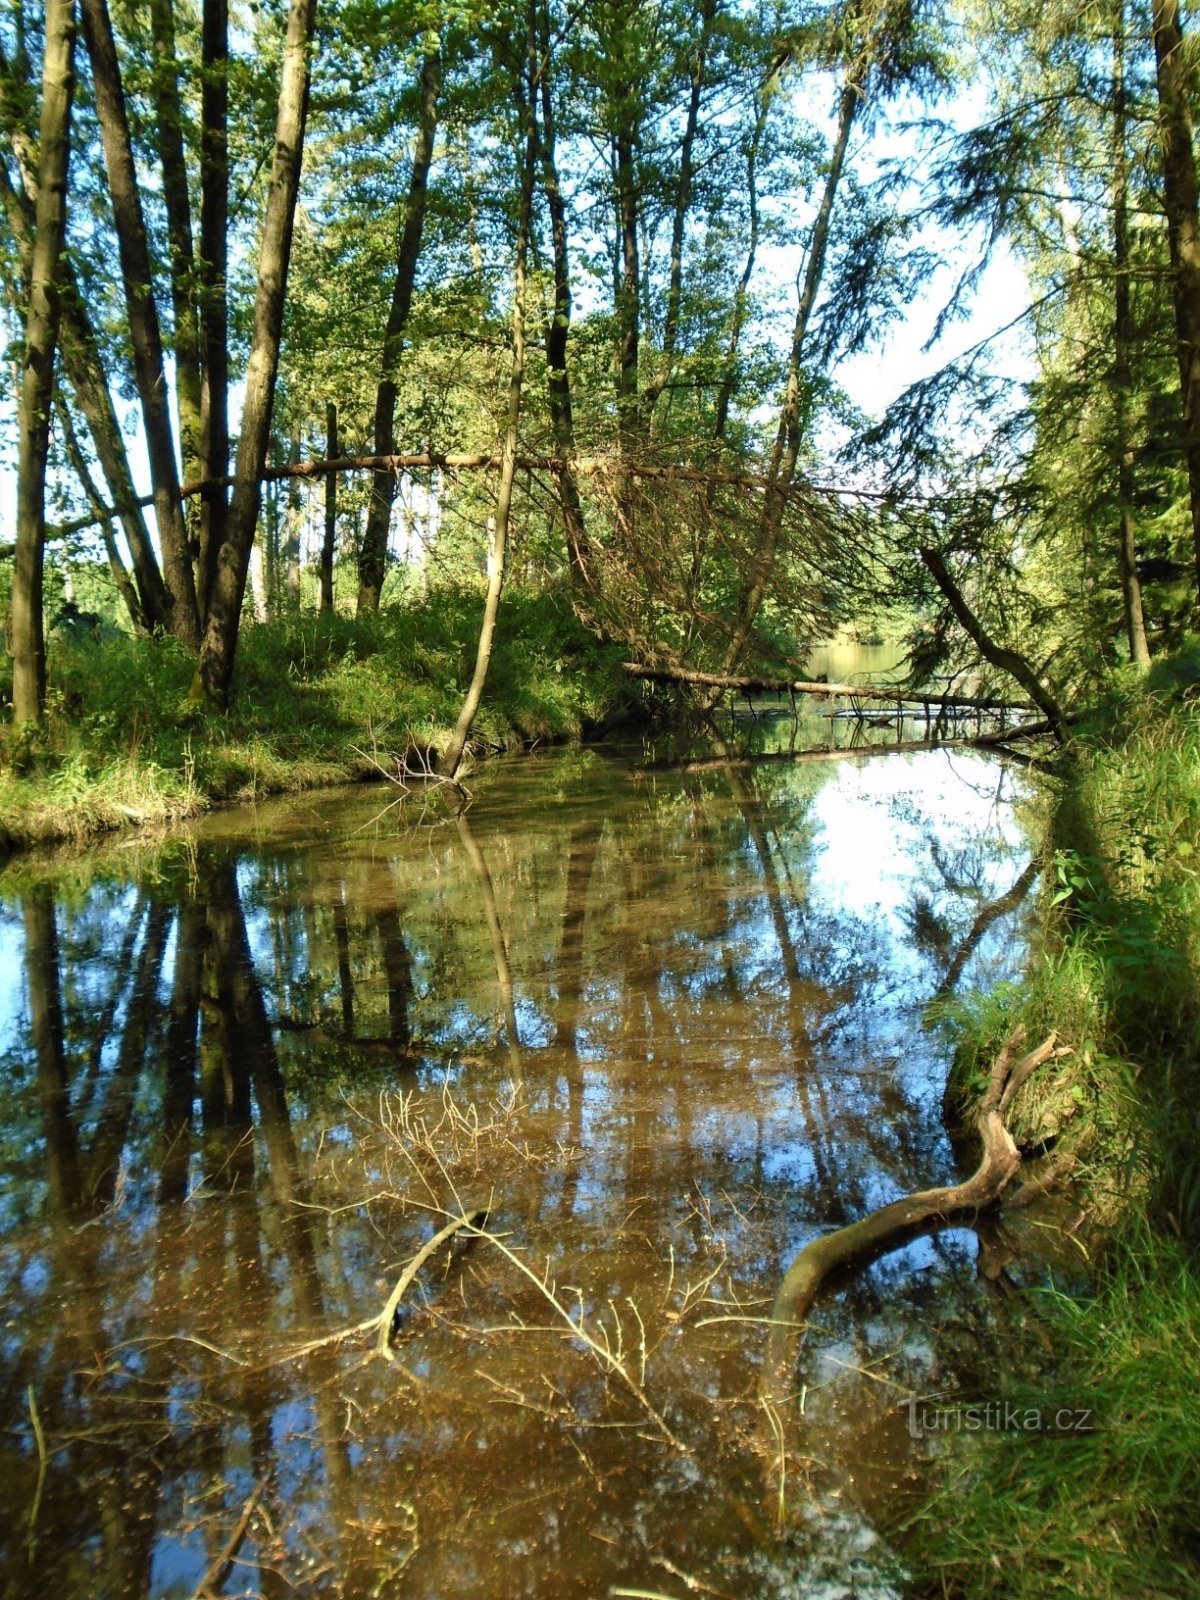 Entrée de l'étang de Šanovce (Běleč nad Orlicí, 3.9.2020/XNUMX/XNUMX)